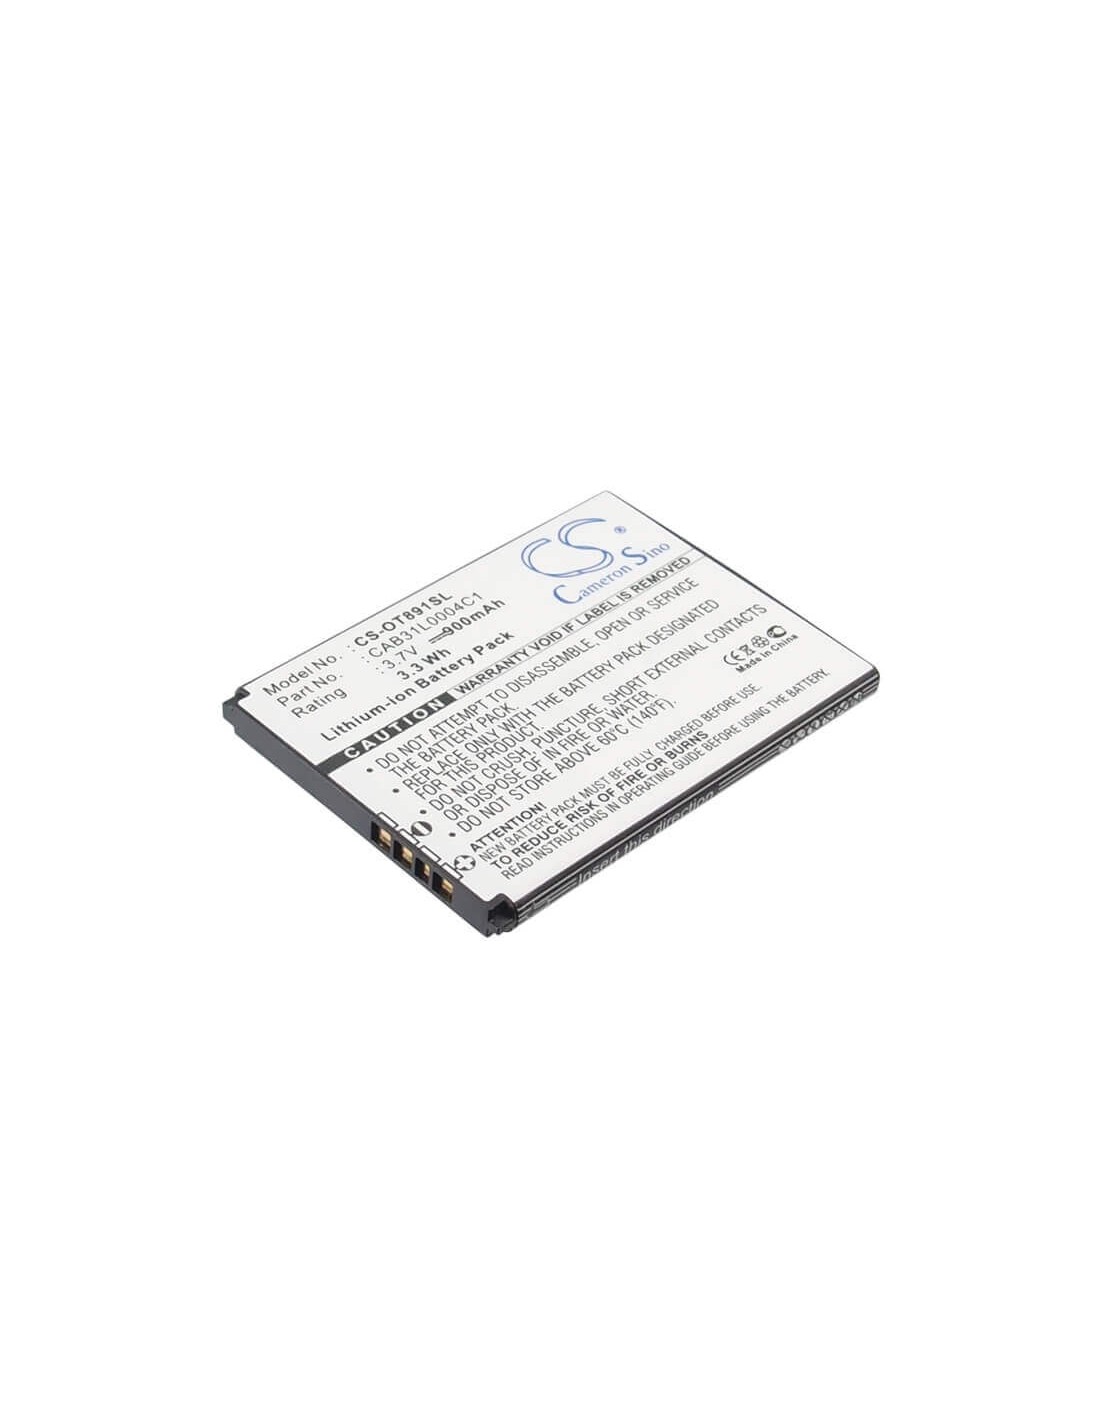 Battery for Alcatel OT-891, One Touch 891, OT-979 3.7V, 900mAh - 3.33Wh